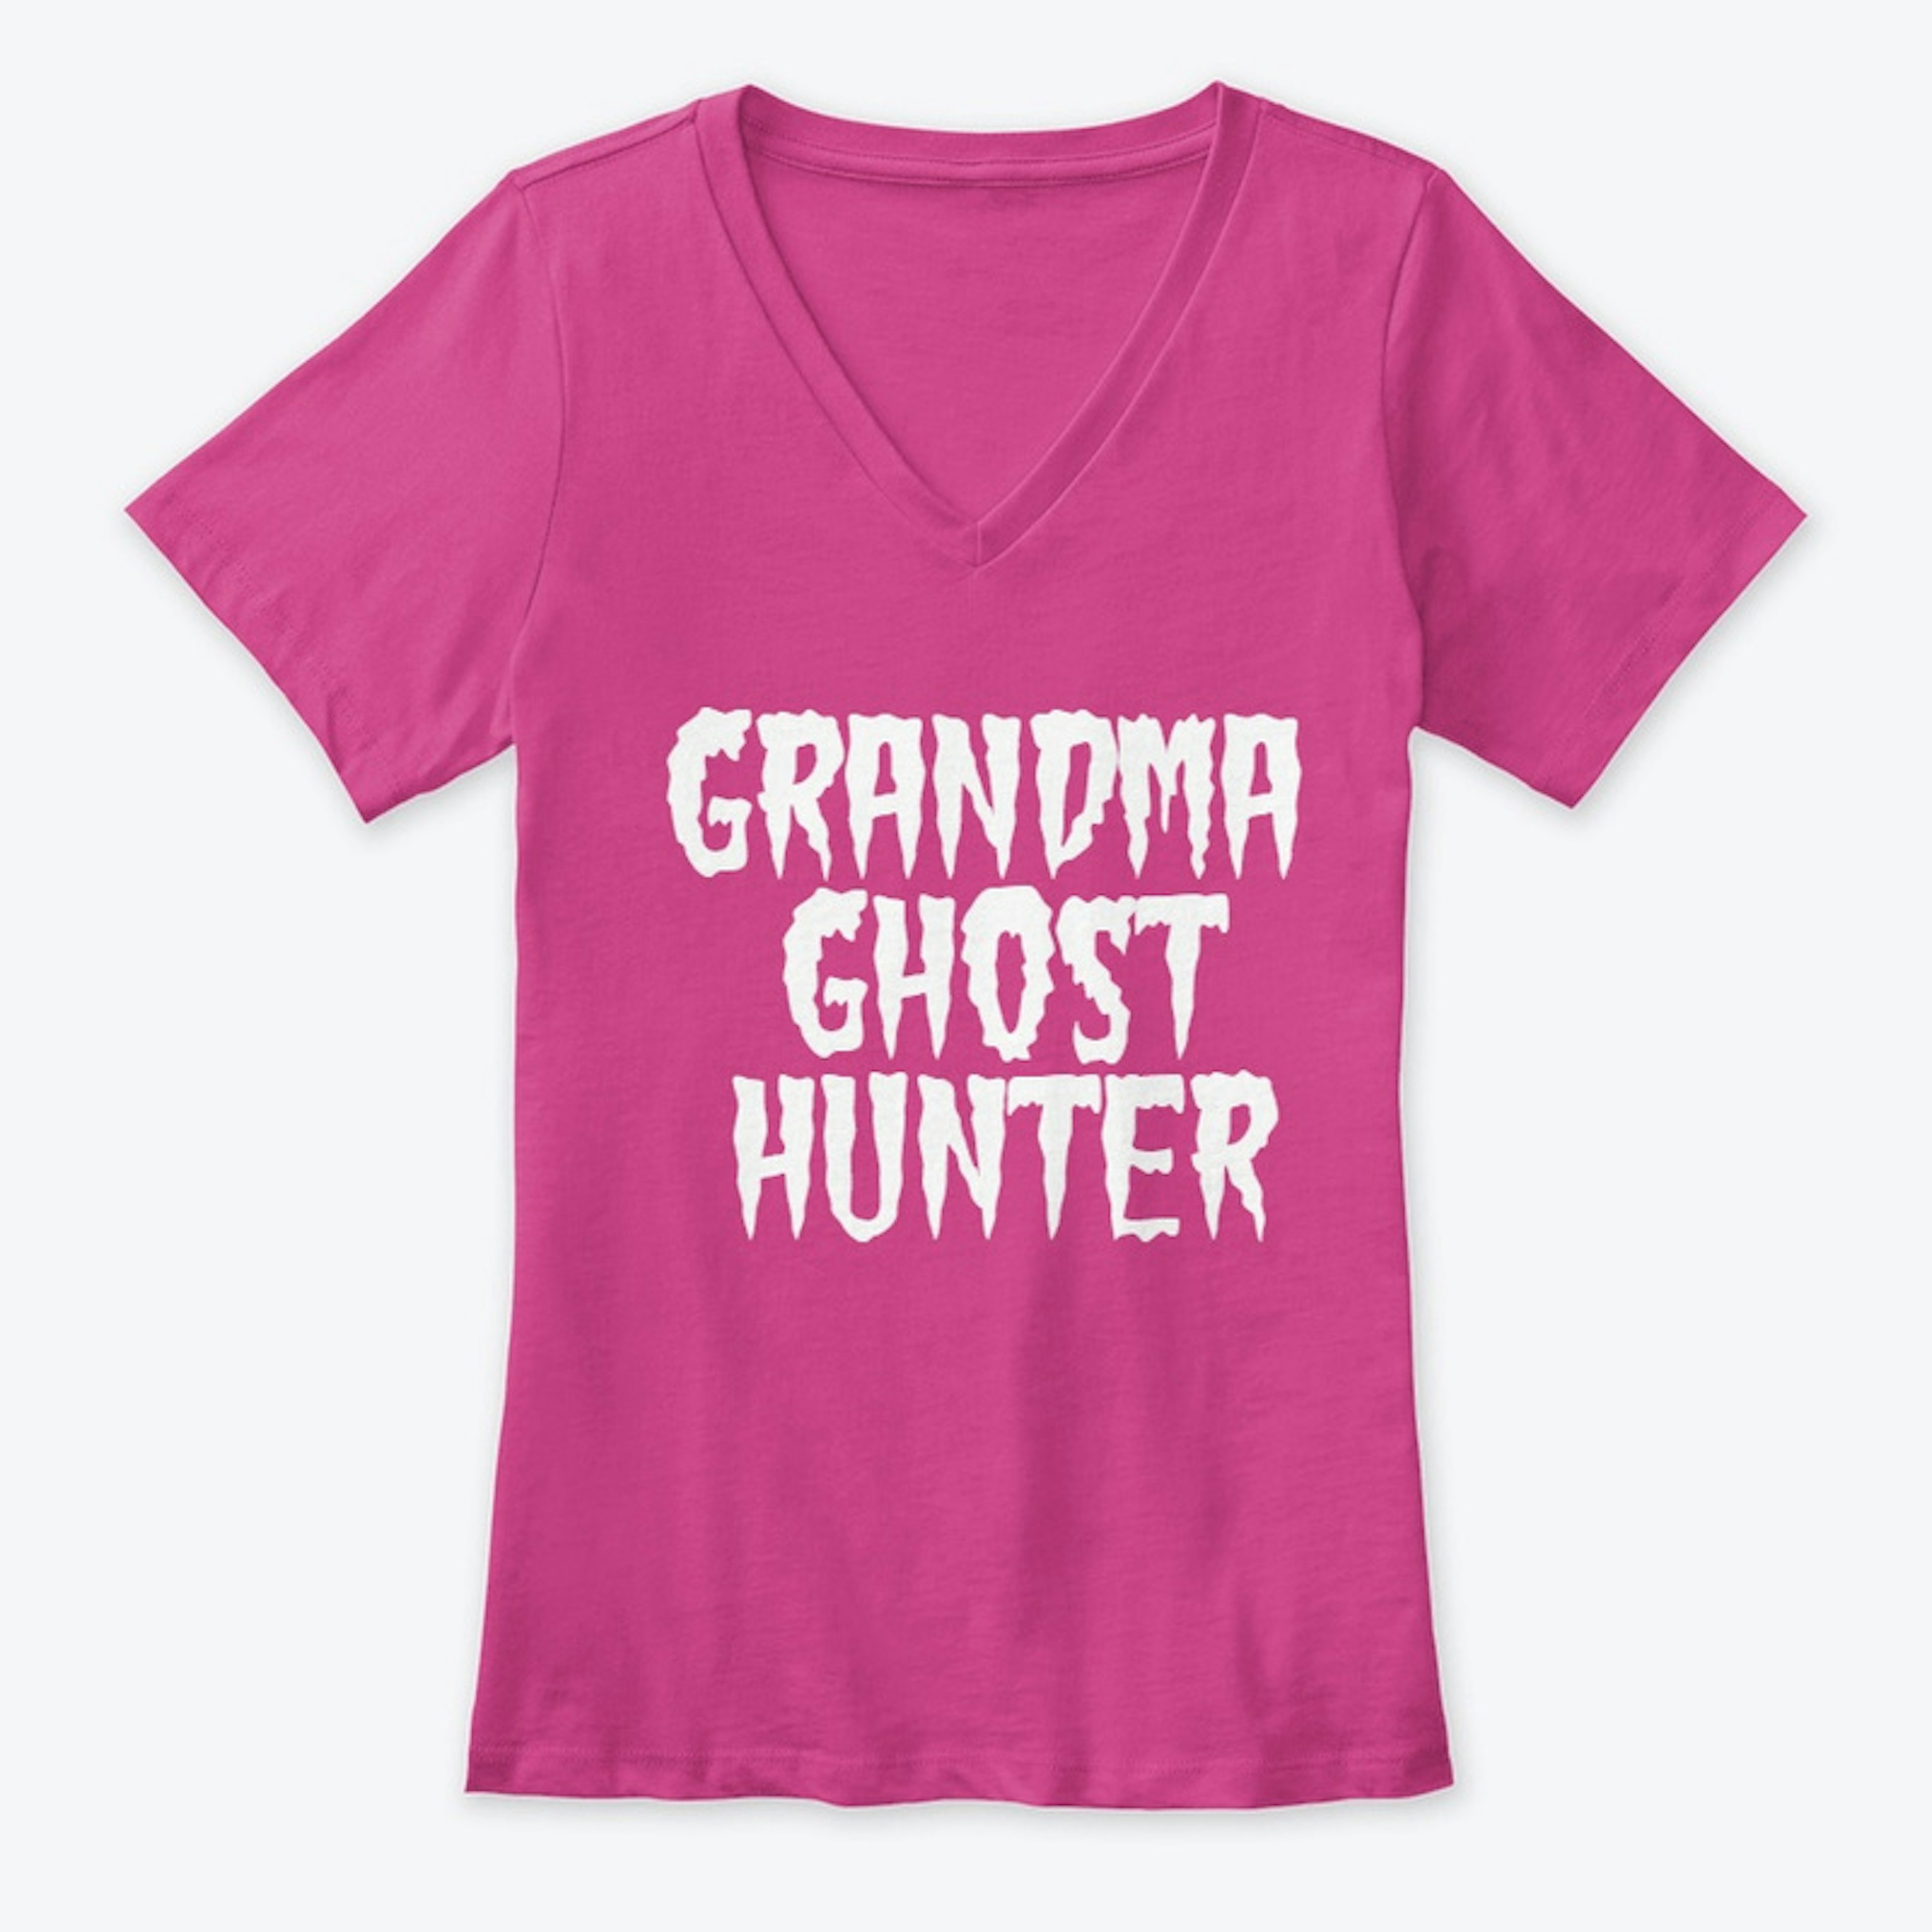 Grandma Ghost Hunter dark light 